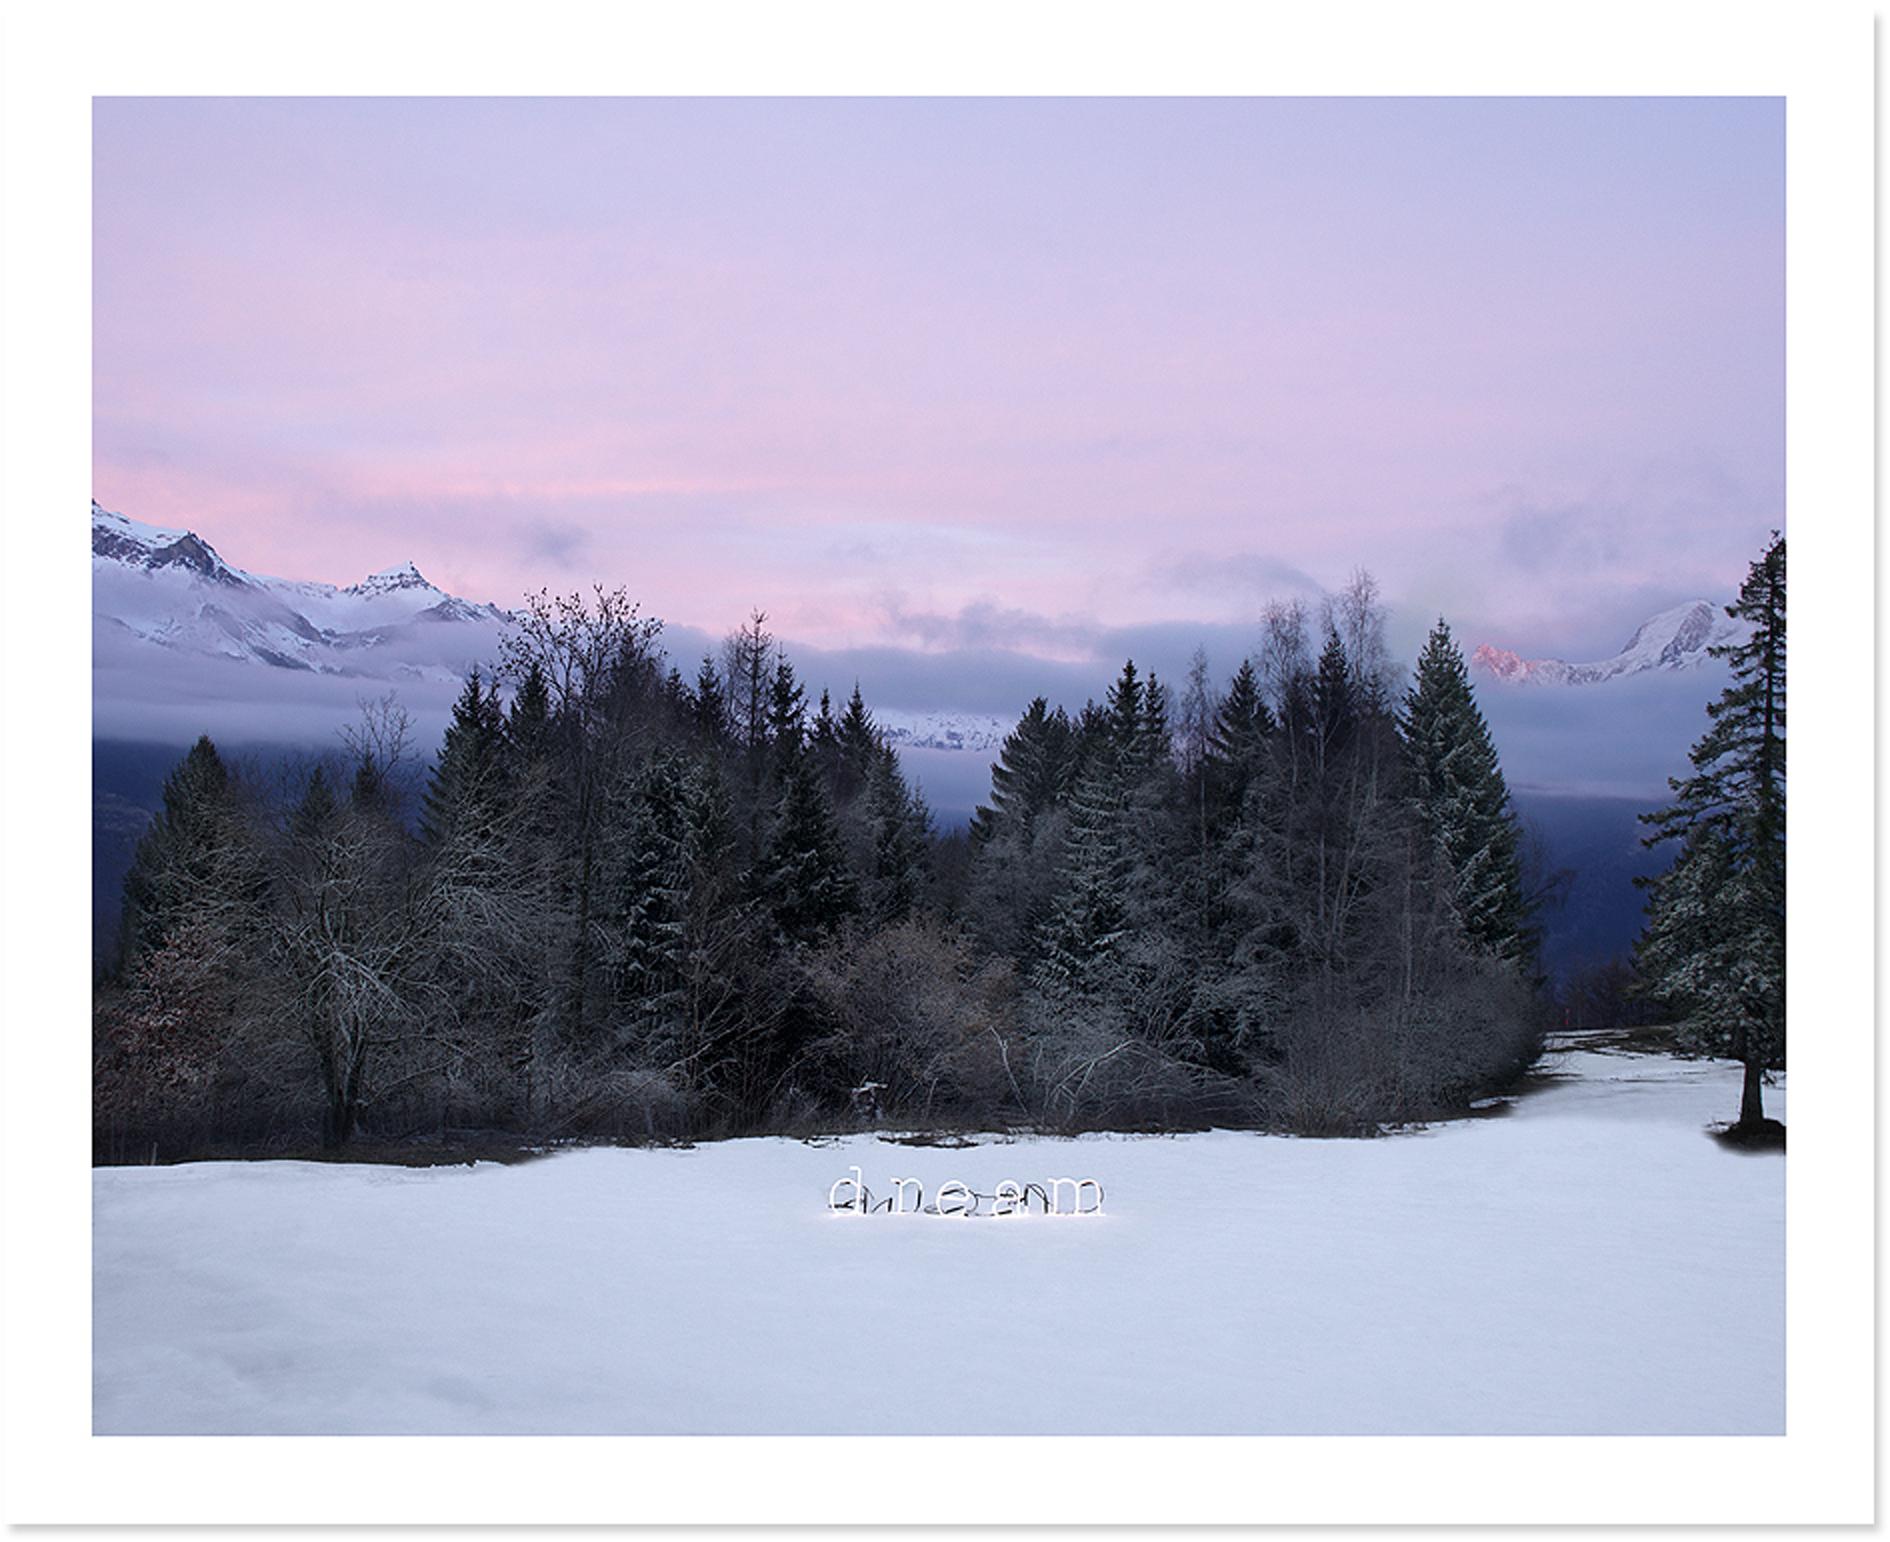 Color Photograph Anne Valverde - Rose rêve de neige, The Dream Art Project